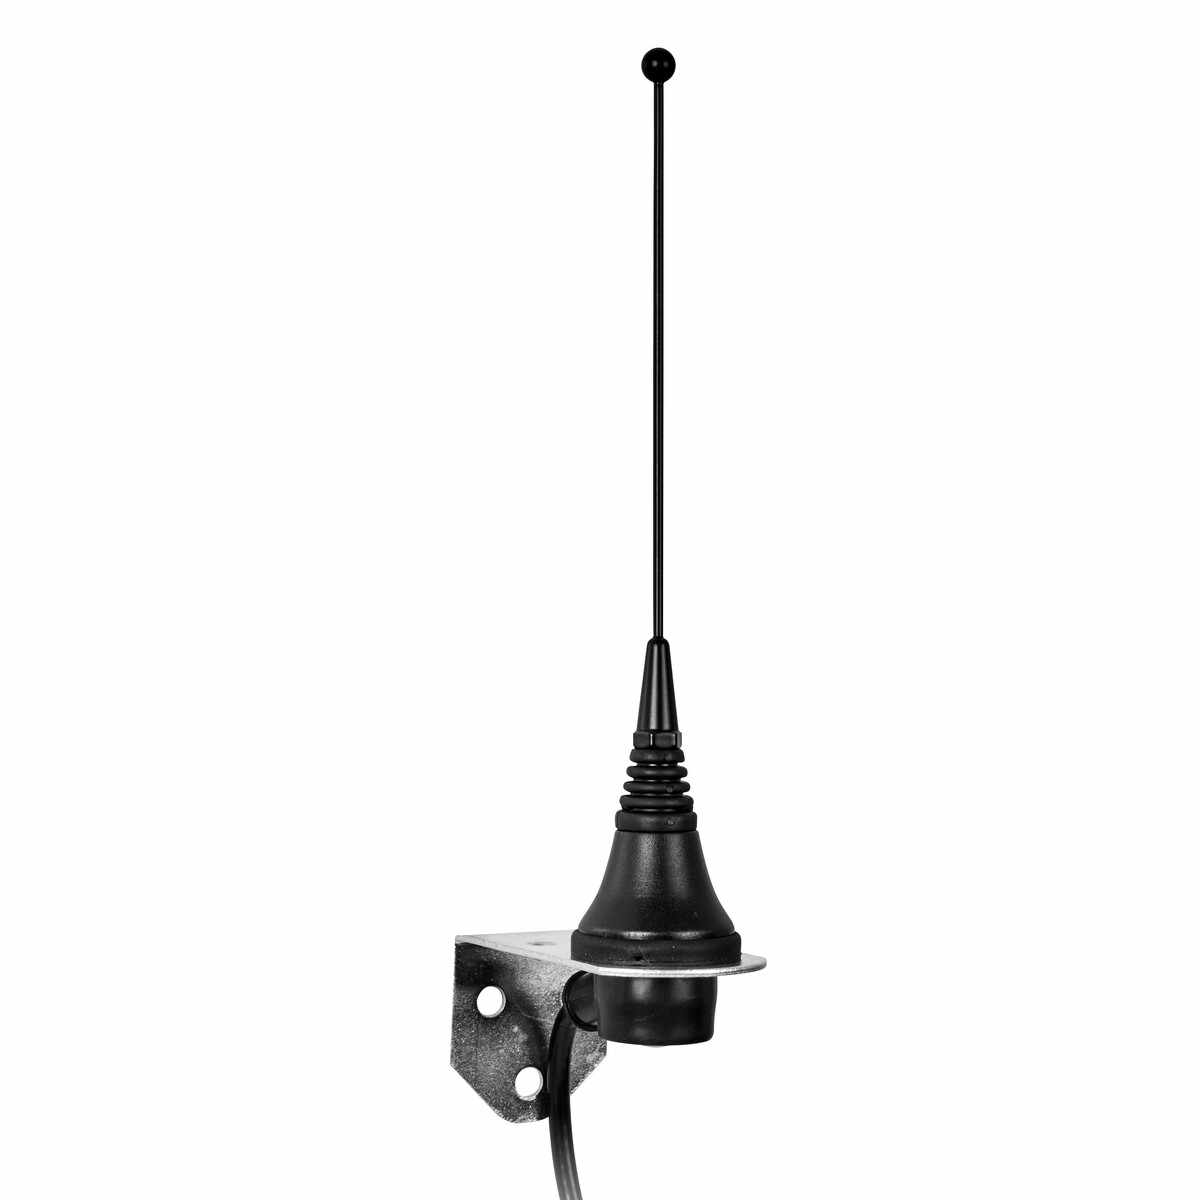 Antenne für drahtlose Fernbedienung Kompass